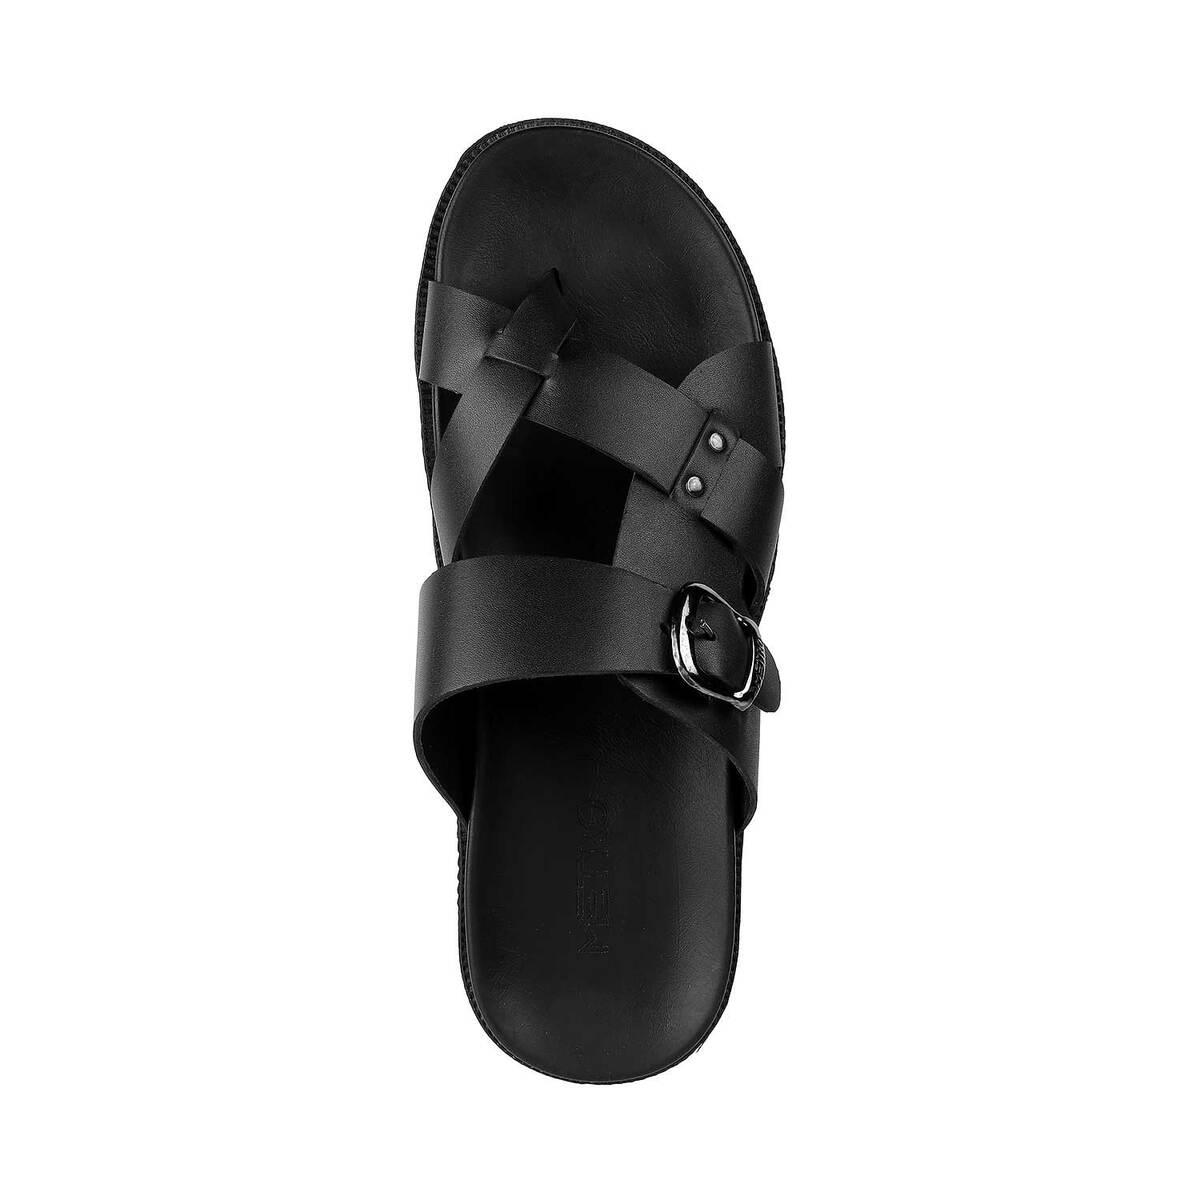 Buy Men Black Casual Slippers Online | SKU: 16-816-11-41-Metro Shoes